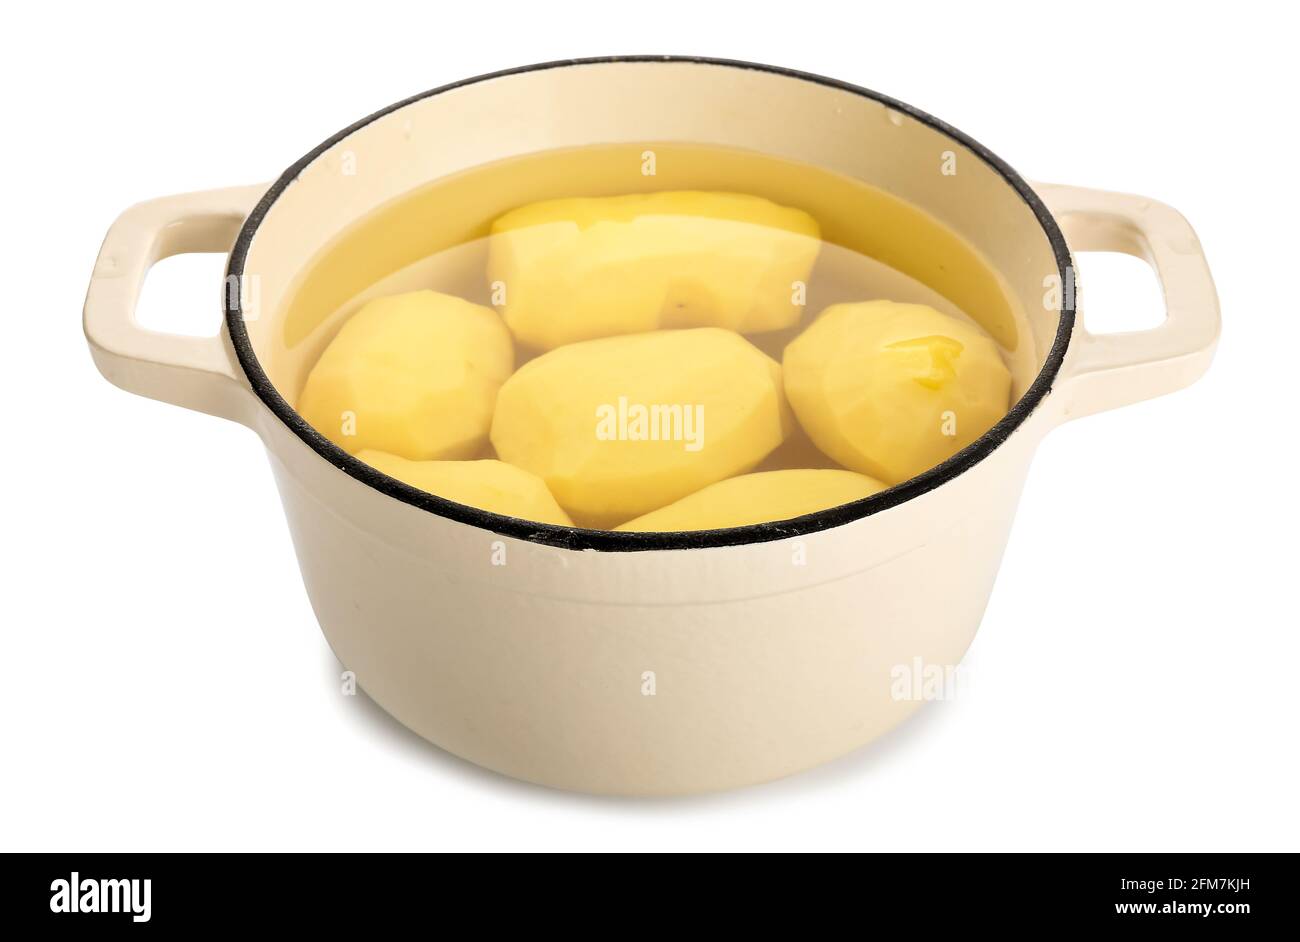 Kochtopf mit geschälten Kartoffeln auf weißem Hintergrund Stockfotografie -  Alamy